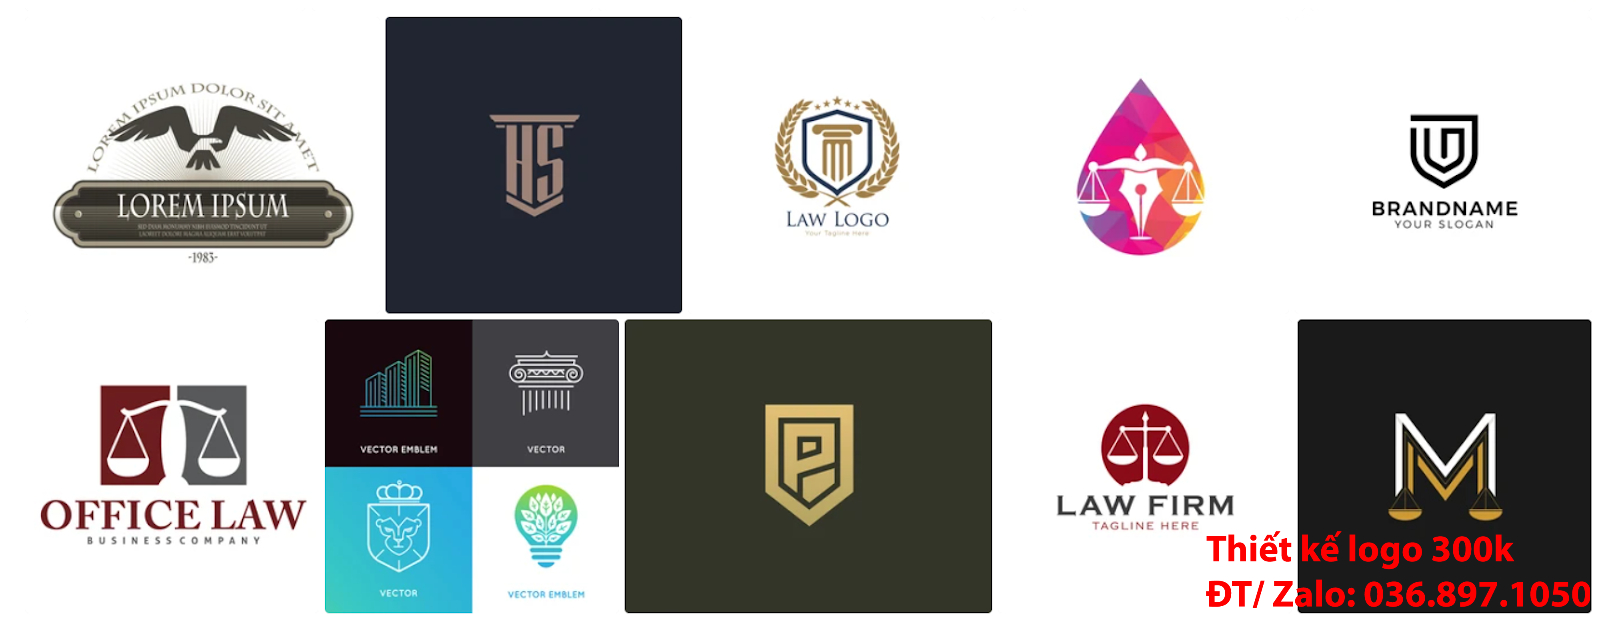 Công ty cung cấp dịch vụ Thiết kế logo công ty luật sư chuyên nghiệp giá rẻ 300k -500k tại Hà Nội